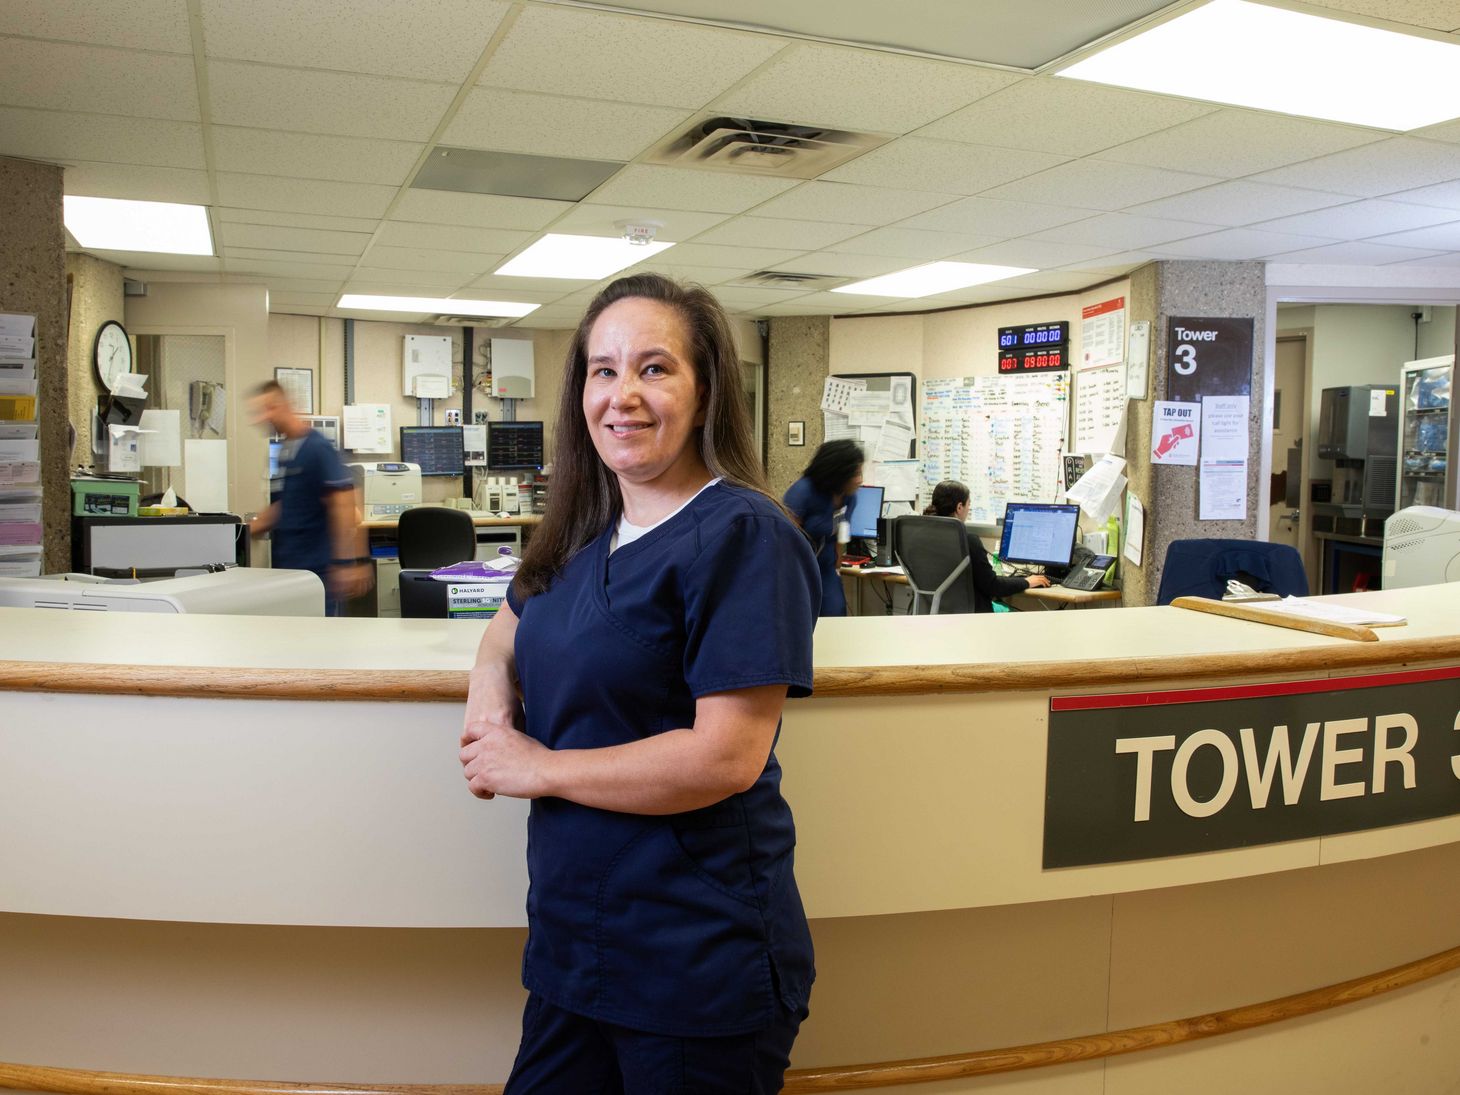 Maria Winner poses at nurses station at Ohio State East Hospital